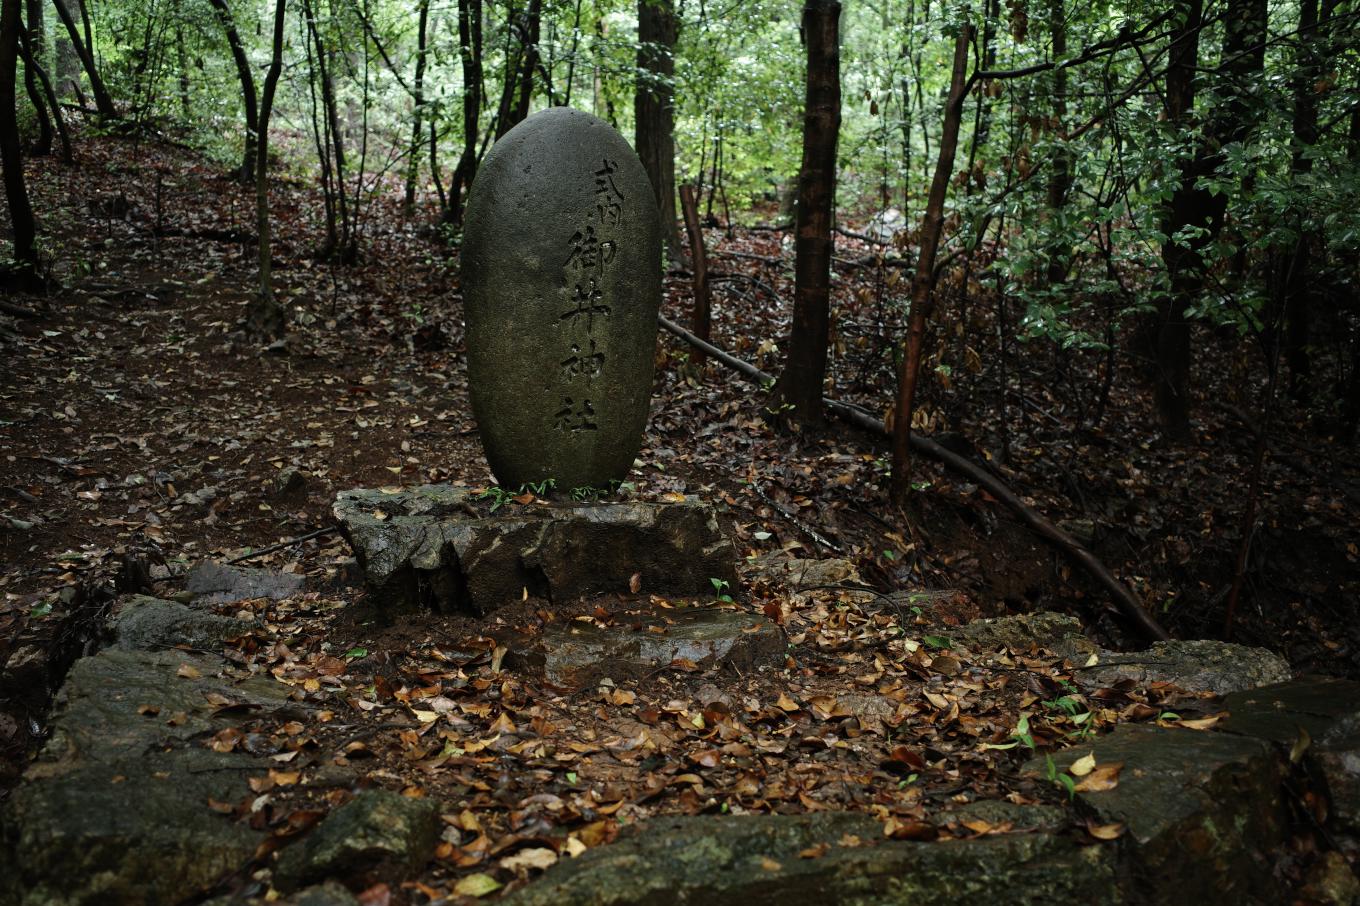 薄暗い樹林にある御井神社の旧社地を示す石碑。